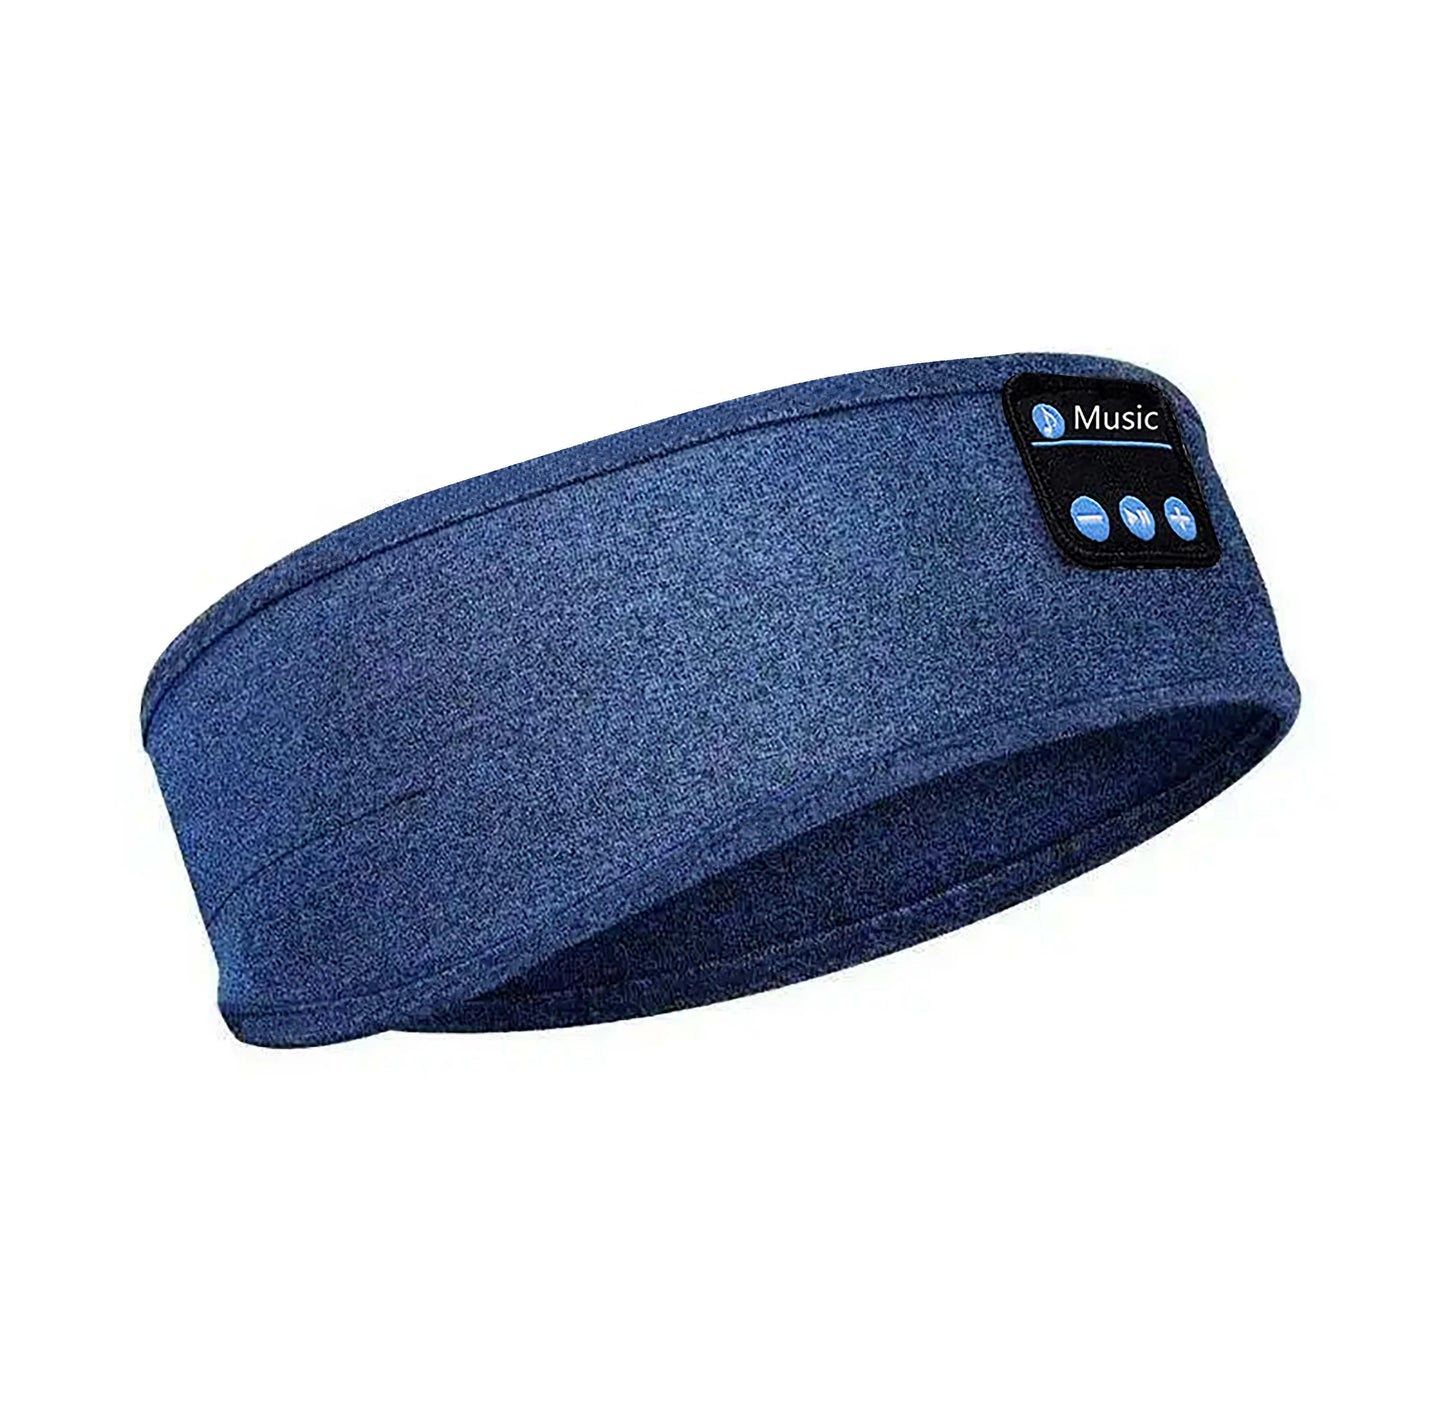 Stole My Day - Slaapmasker Bluetooth - Hoofdband - Slaap Koptelefoon Draadloos - Zweetband Hoofd - Oplaadbaar via Usb C